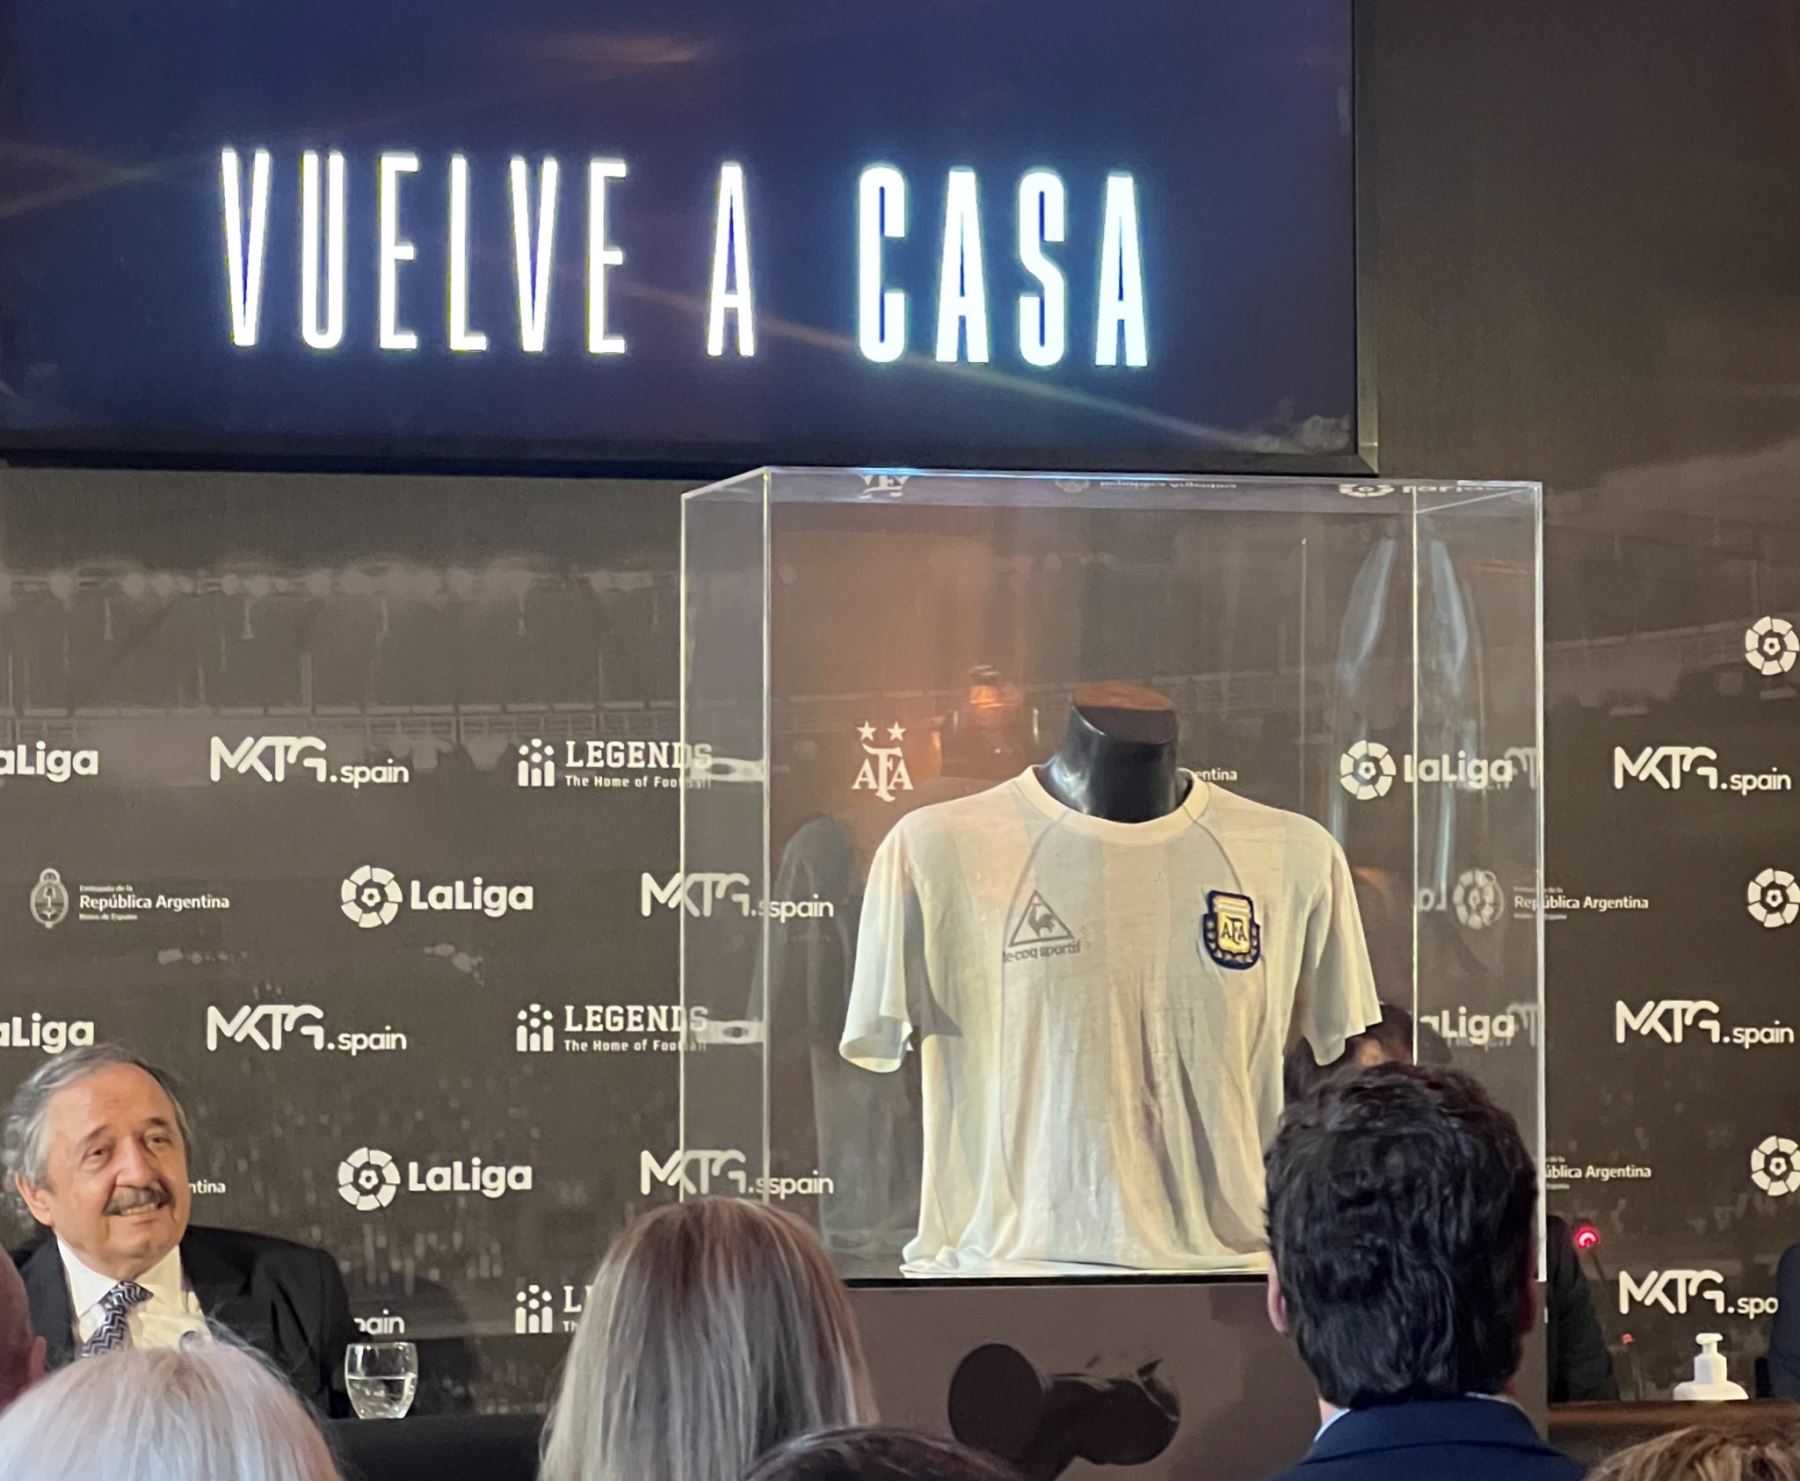 La camiseta que usó Maradona en el Mundial 86 ya se encuentra en Legends la mayor colección de reliquias del fútbol internacional.